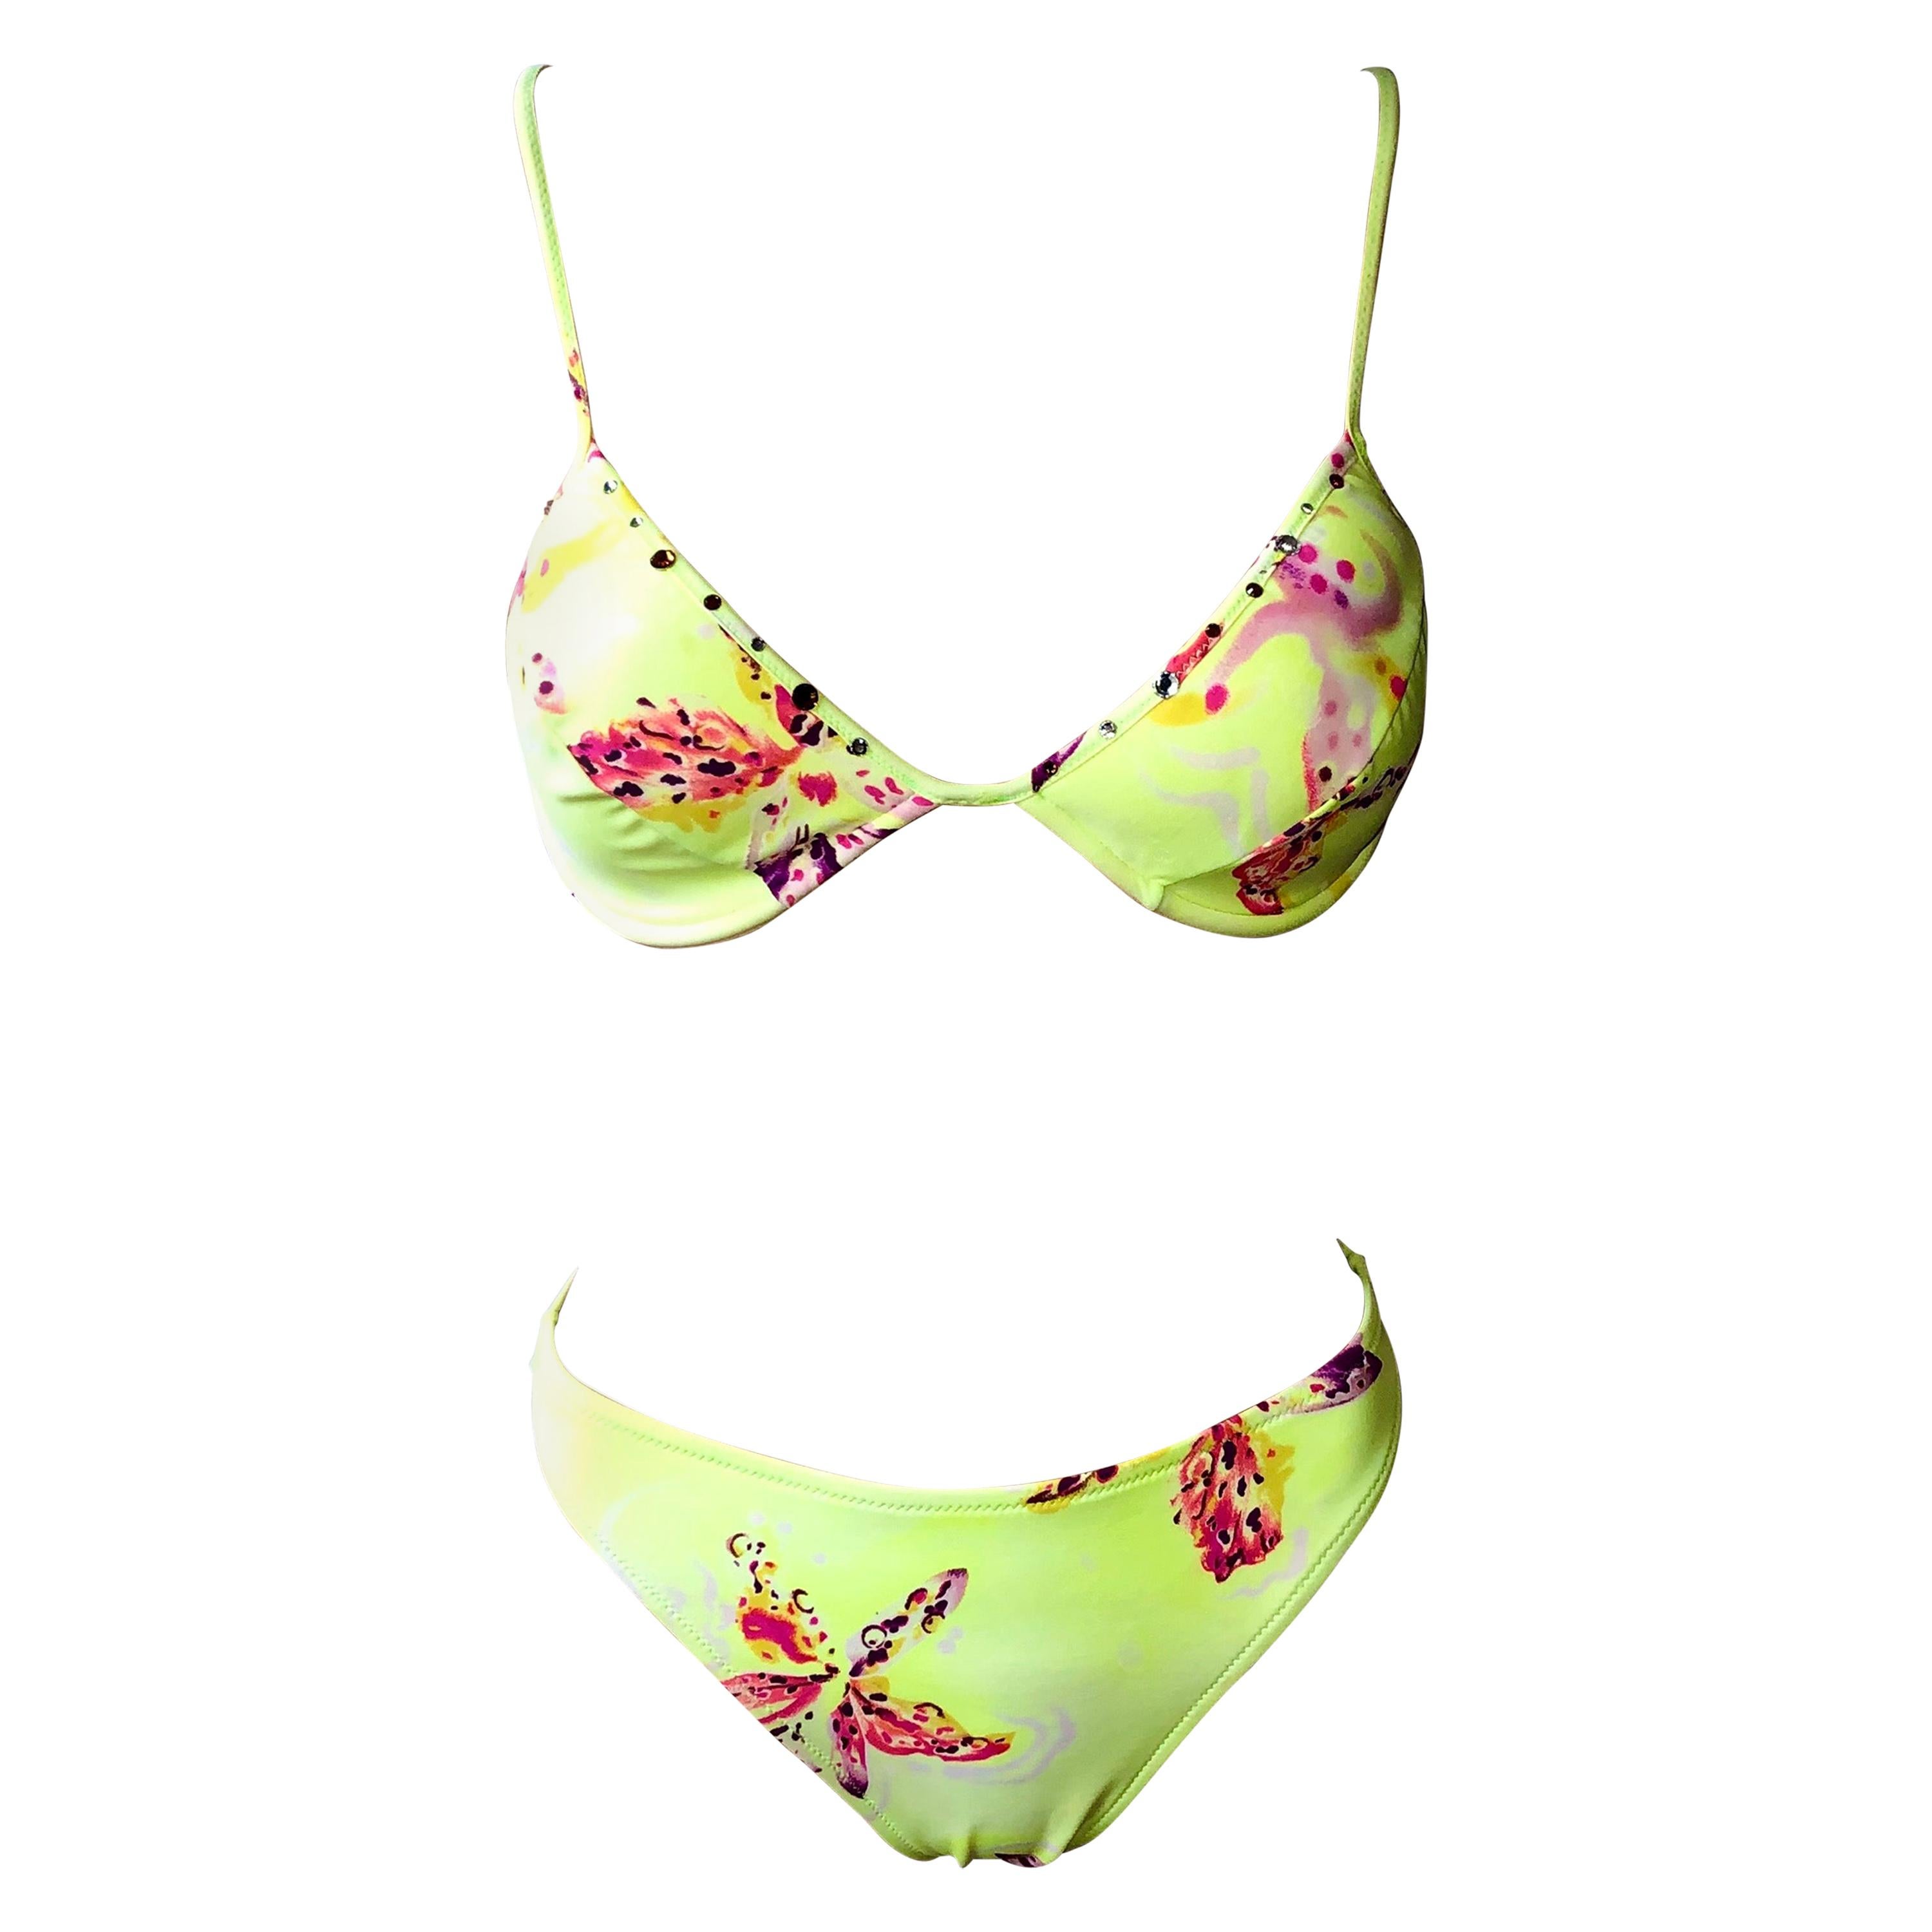 Ensemble Bikini deux pièces Gianni Versace Orchid Neon S/S 2000 - Maillot de bain et maillot de bain  en vente